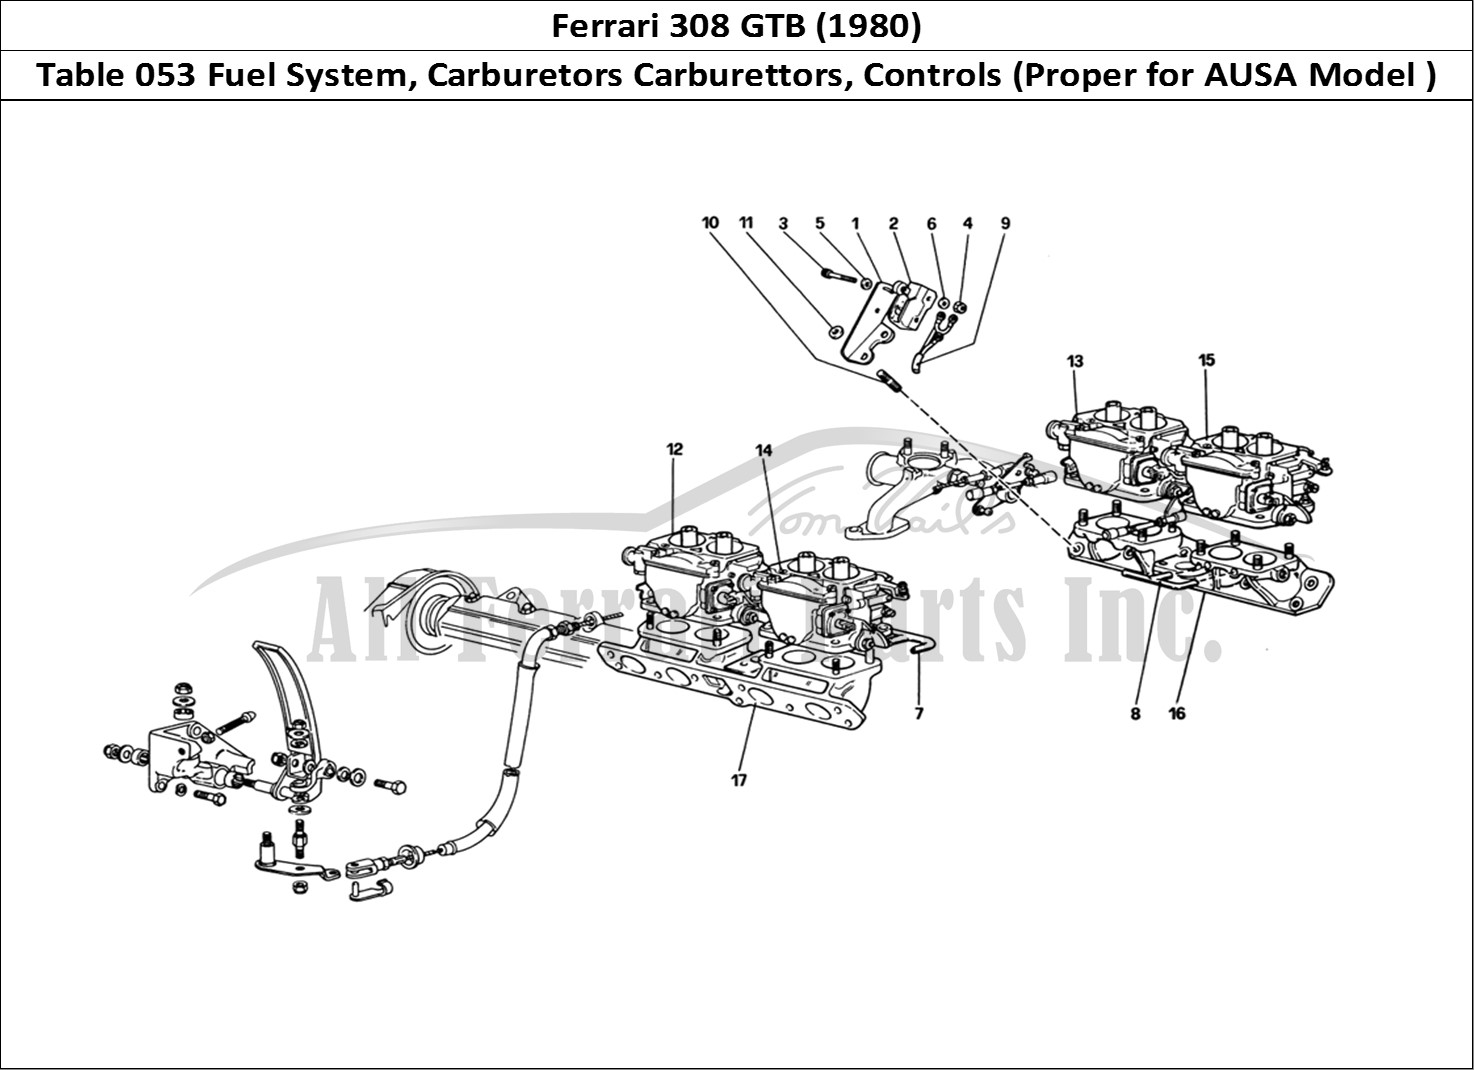 Ferrari Parts Ferrari 308 GTB (1980) Page 053 Fuel System - Carburettor